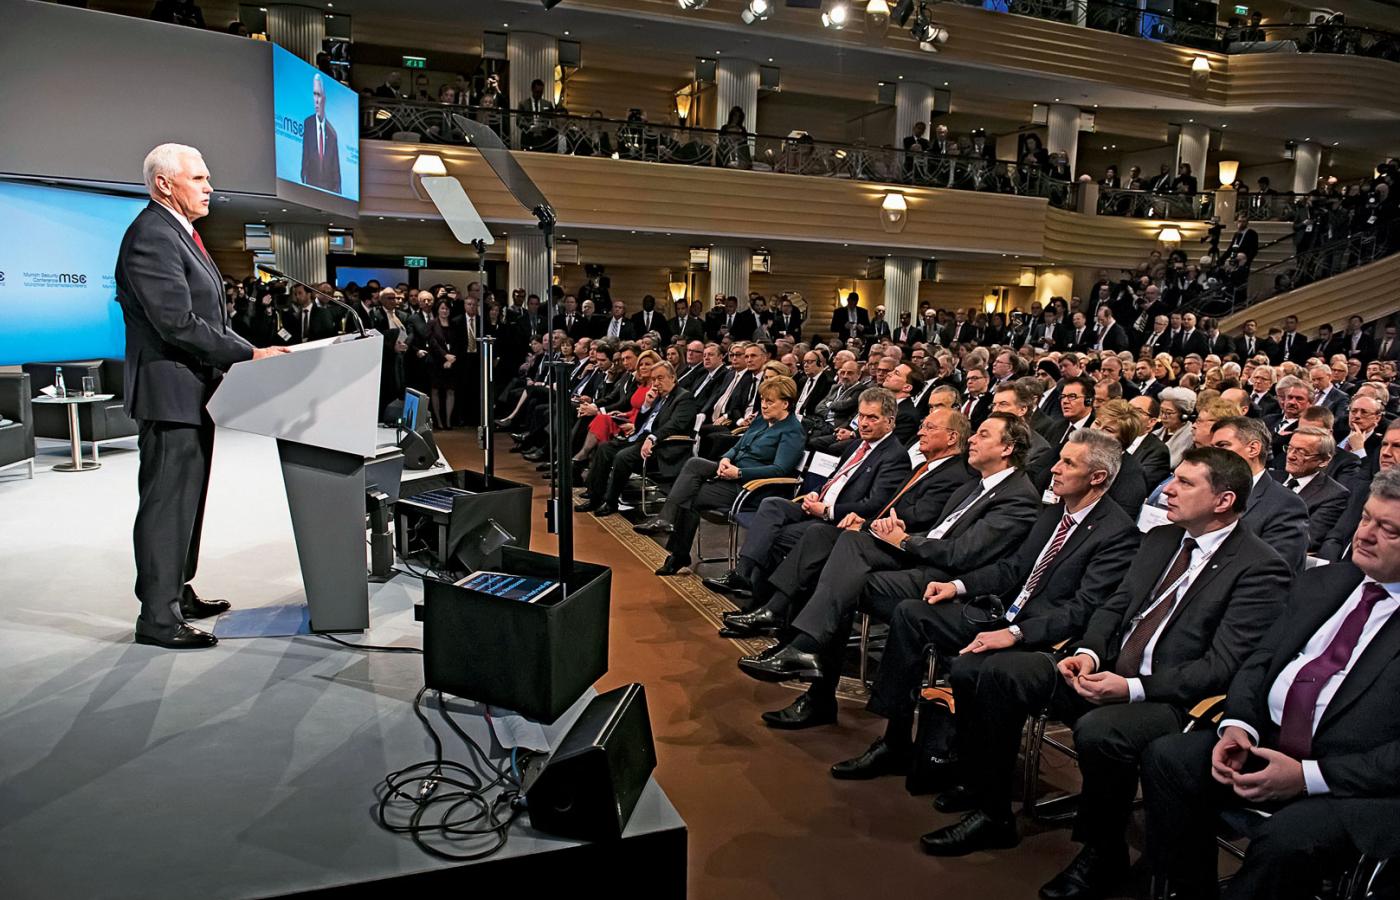 Wiceprezydent USA Mike Pence przemawia w Monachium, w pierwszym rzędzie słuchaczy m.in. kanclerz Angela Merkel (w środku) i prezydent Ukrainy Petro Poroszenko (pierwszy z prawej).